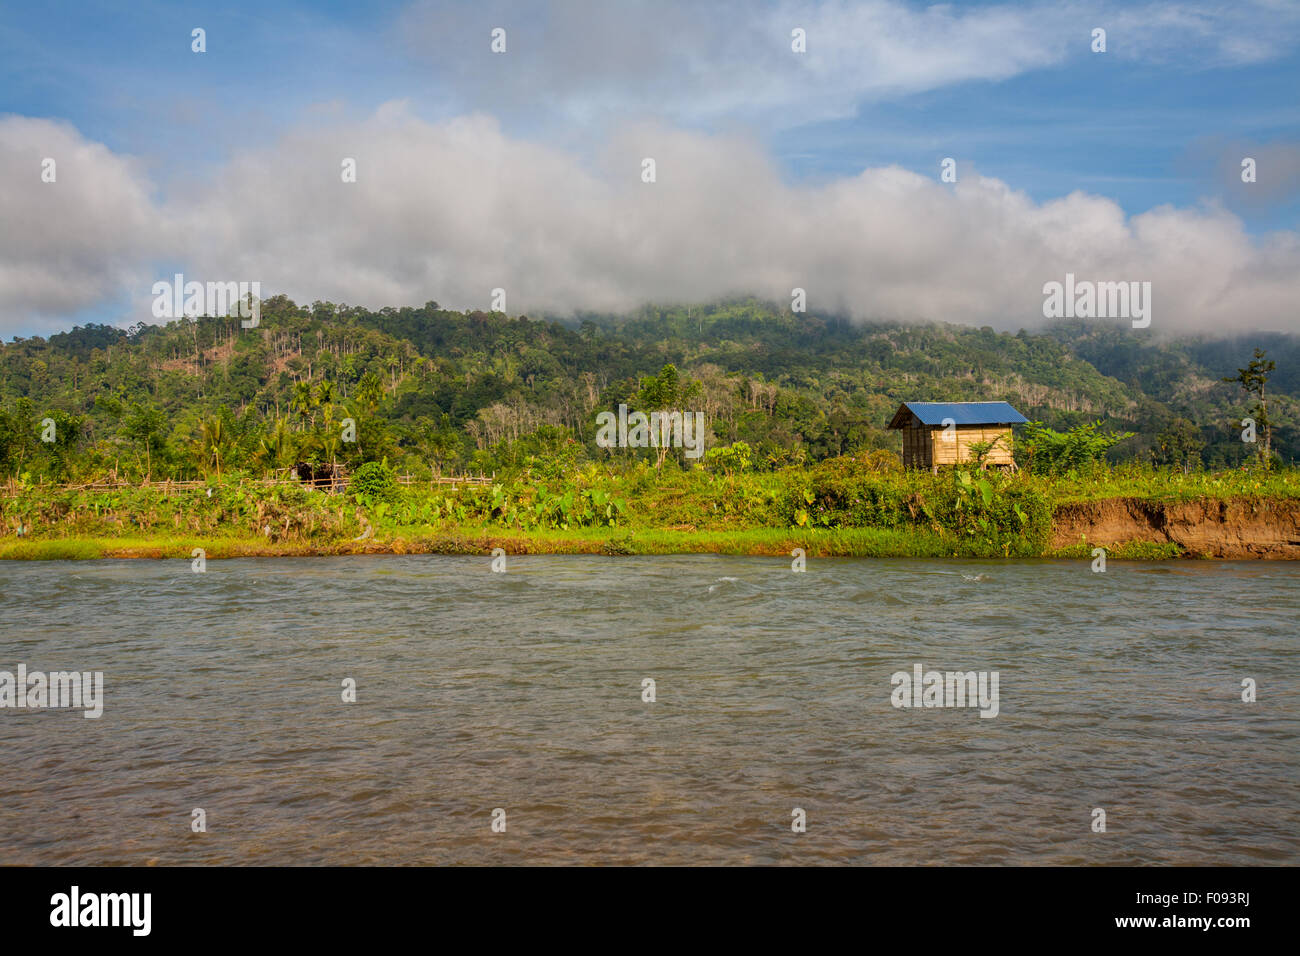 Terres agricoles et hutte agricole sur la rive d'une rivière près de Lubuk Sikaping, Pasaman, Sumatra Ouest, Indonésie. Banque D'Images